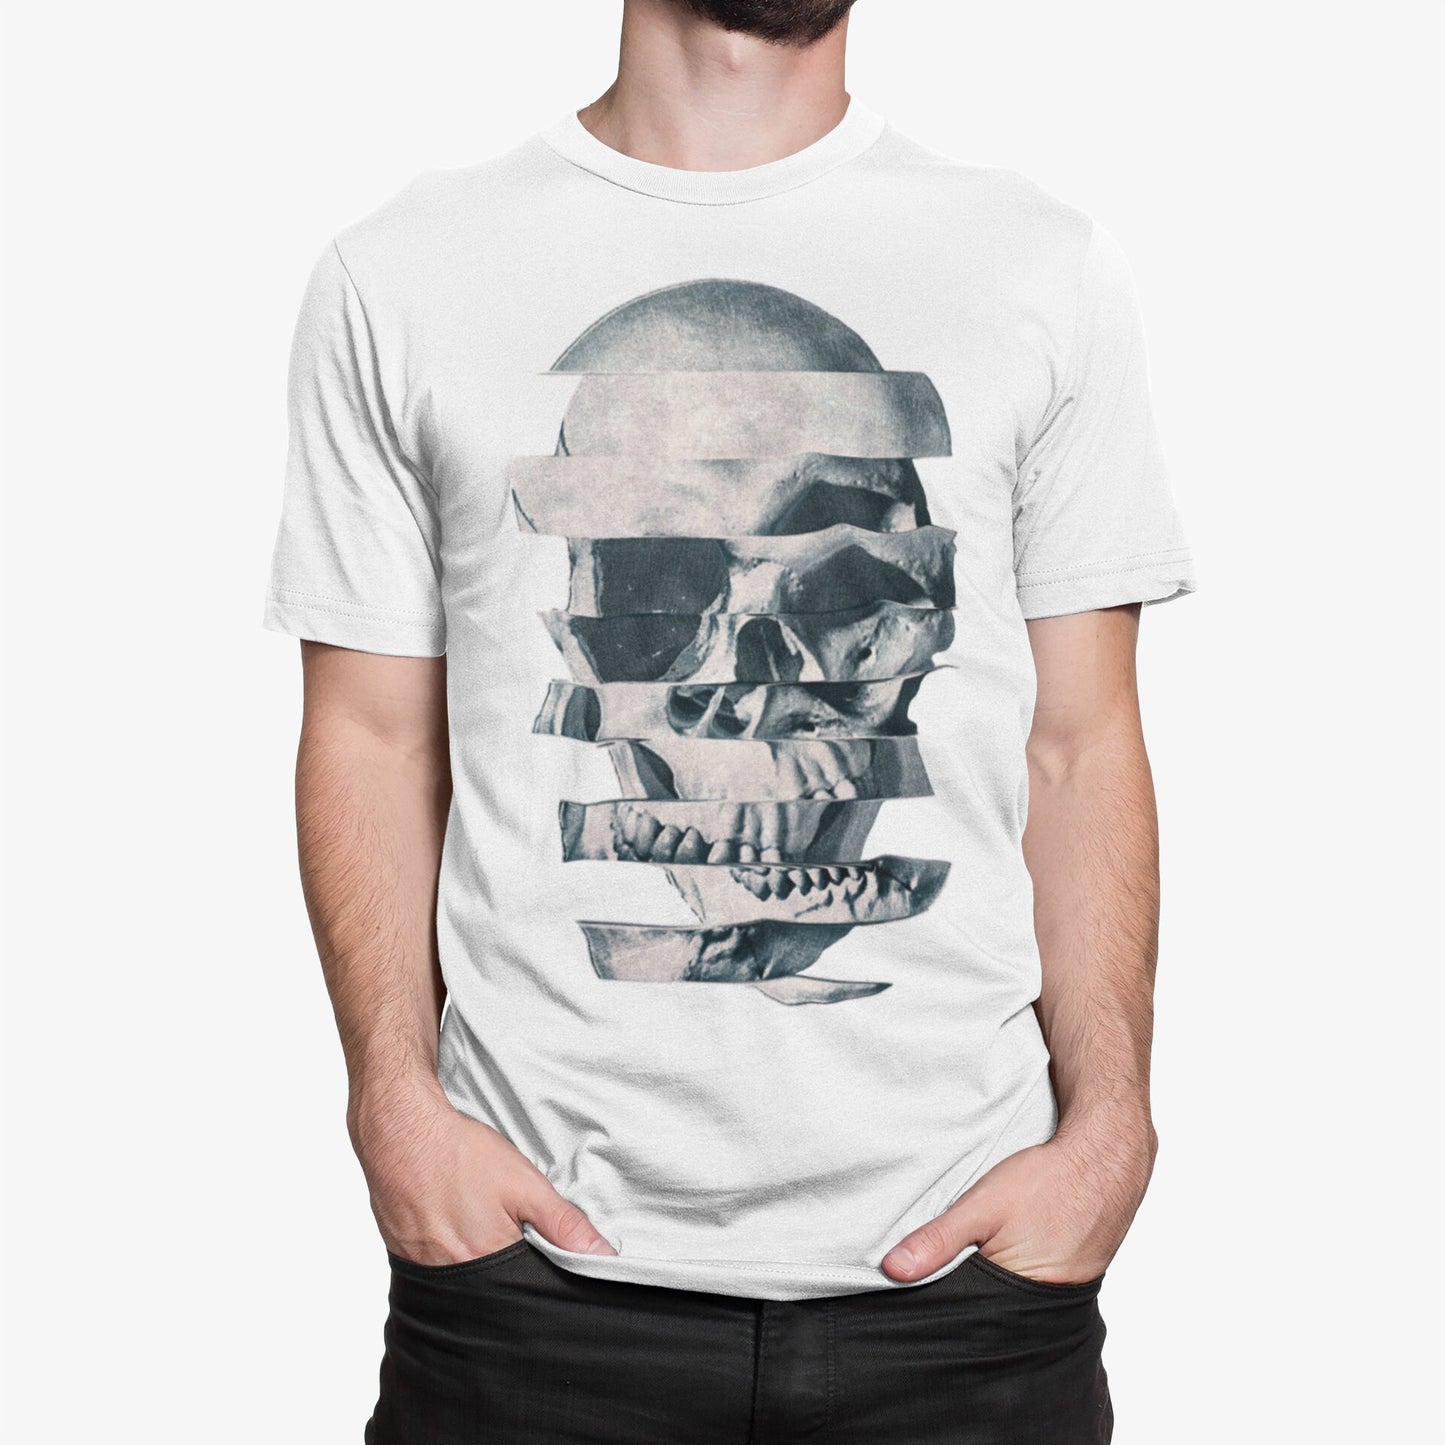 Glitch Skull Men's T-shirt, Printed Skull Art Tshirt, Original Sugar Skull Mens Shirt, Mens Graphic Tees, Bella Canvas Cool Skull Art Print